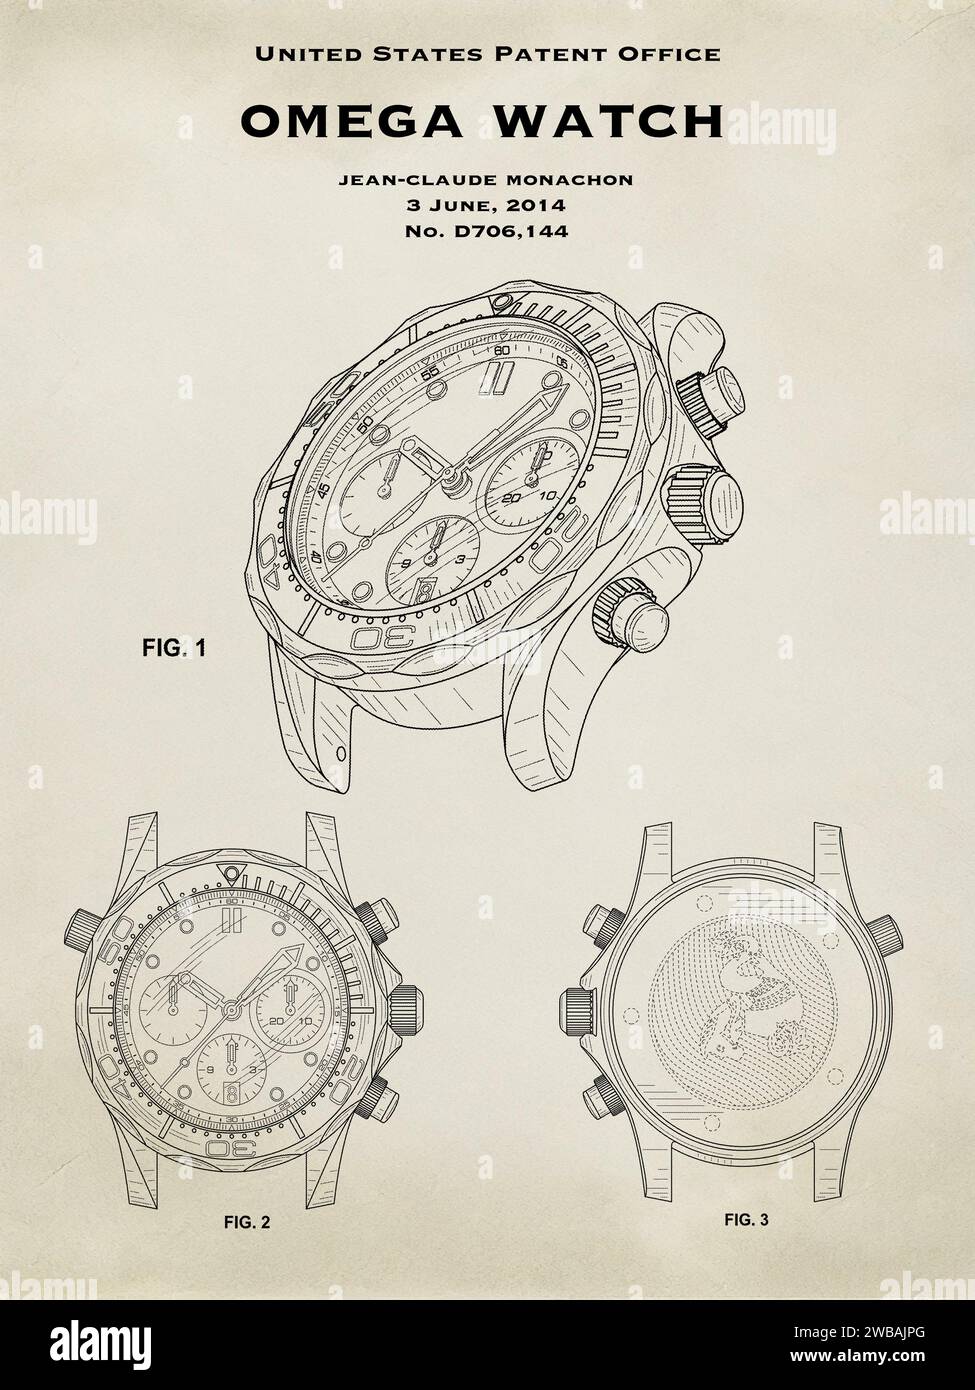 US-Patent-Design von 2014 für eine Omega-Taucheruhr auf neutralem Hintergrund Stockfoto